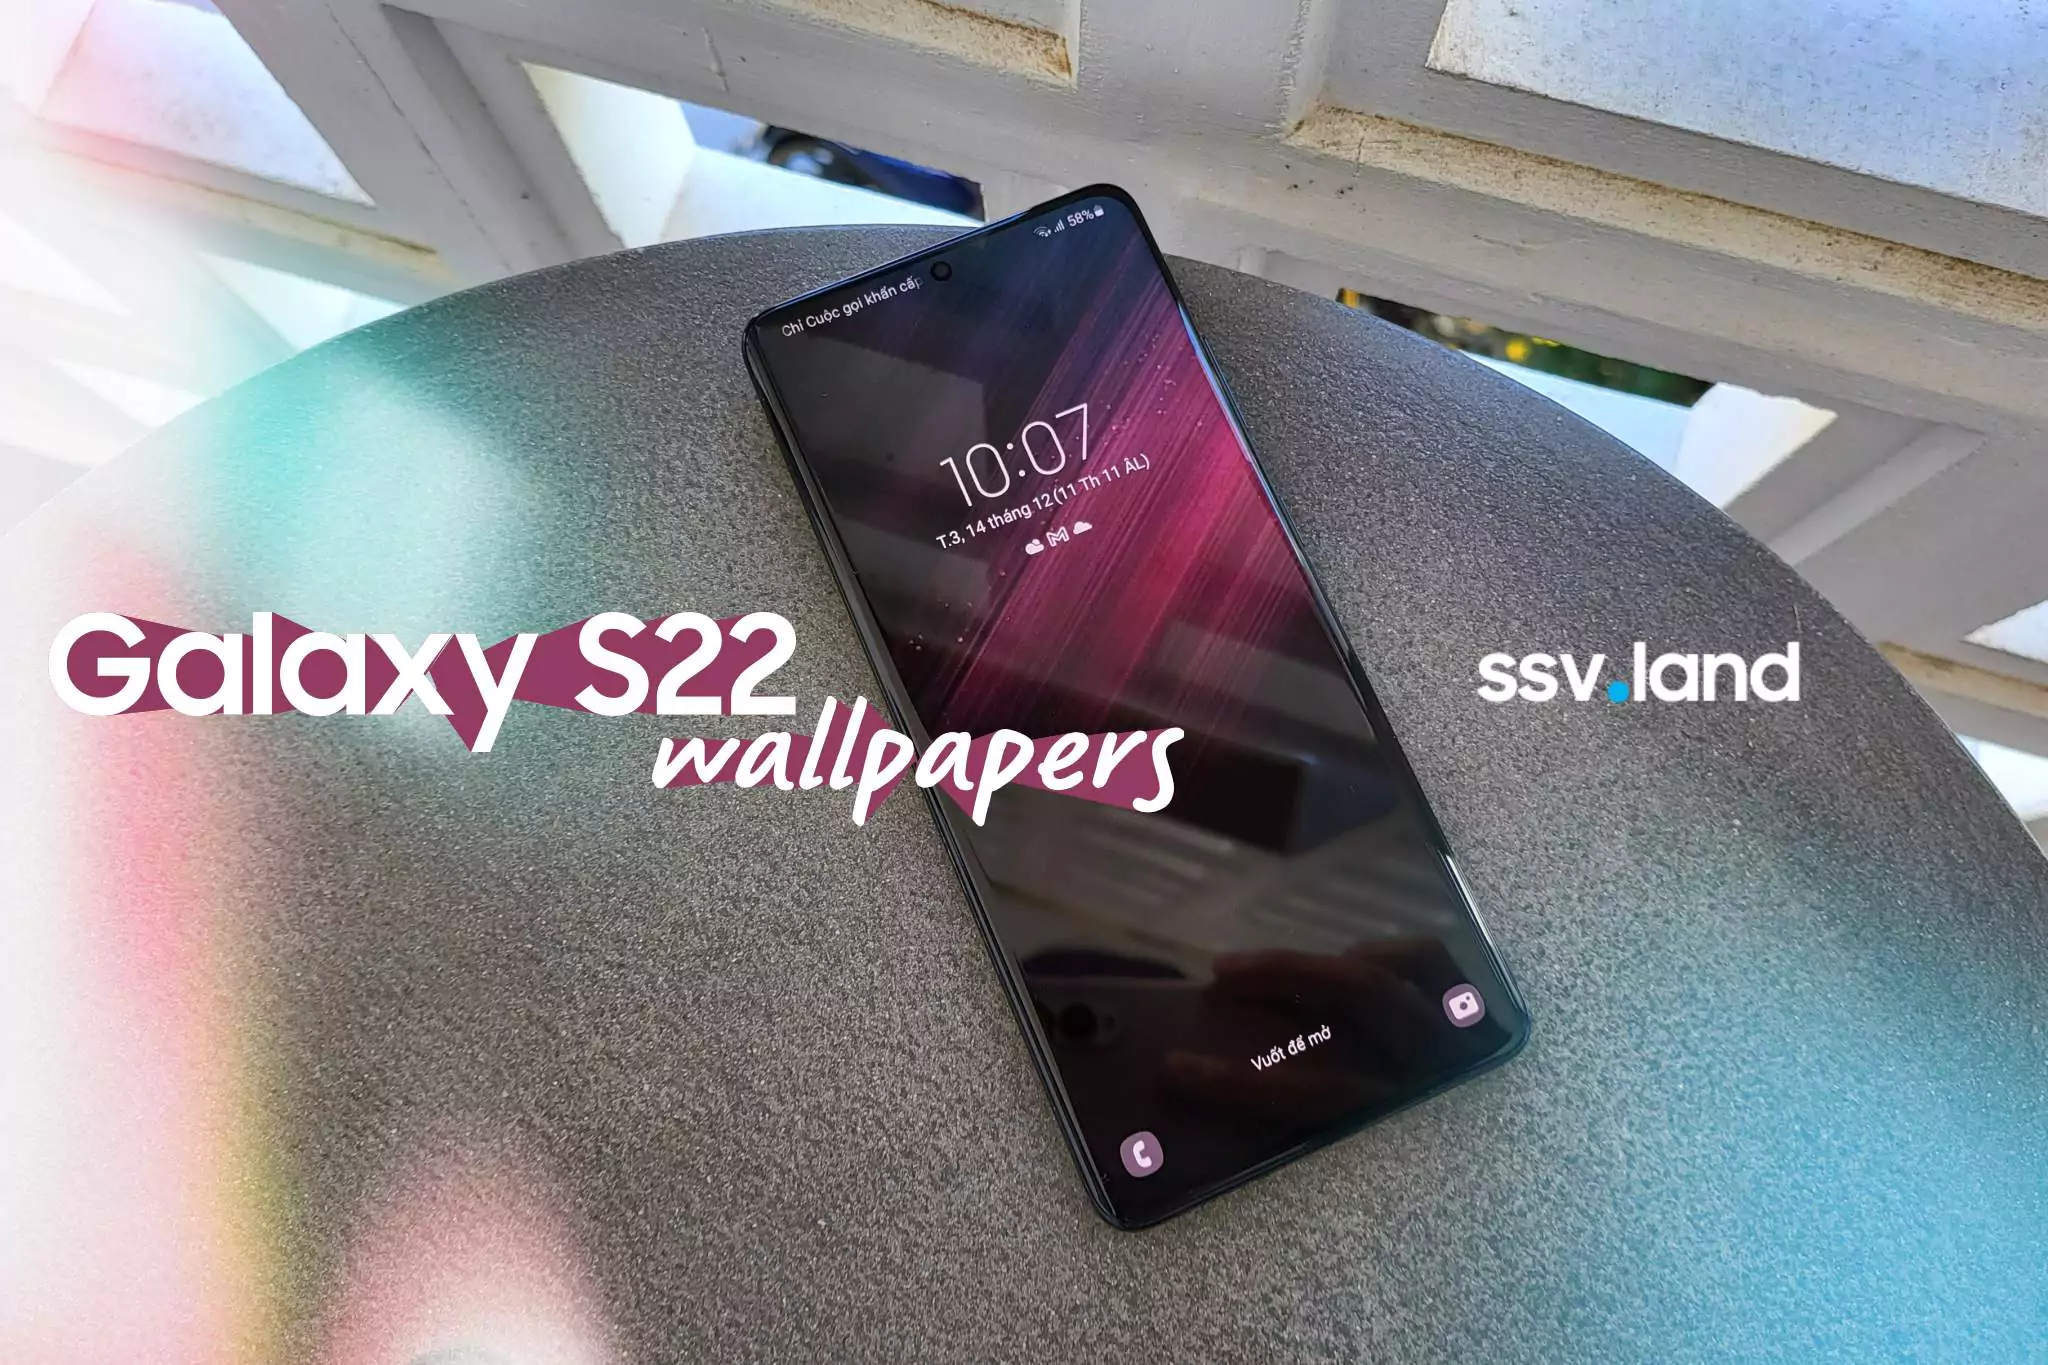 So sánh Samsung Galaxy S22 và S22 Ultra: Chọn thường hay cao cấp? -  Fptshop.com.vn